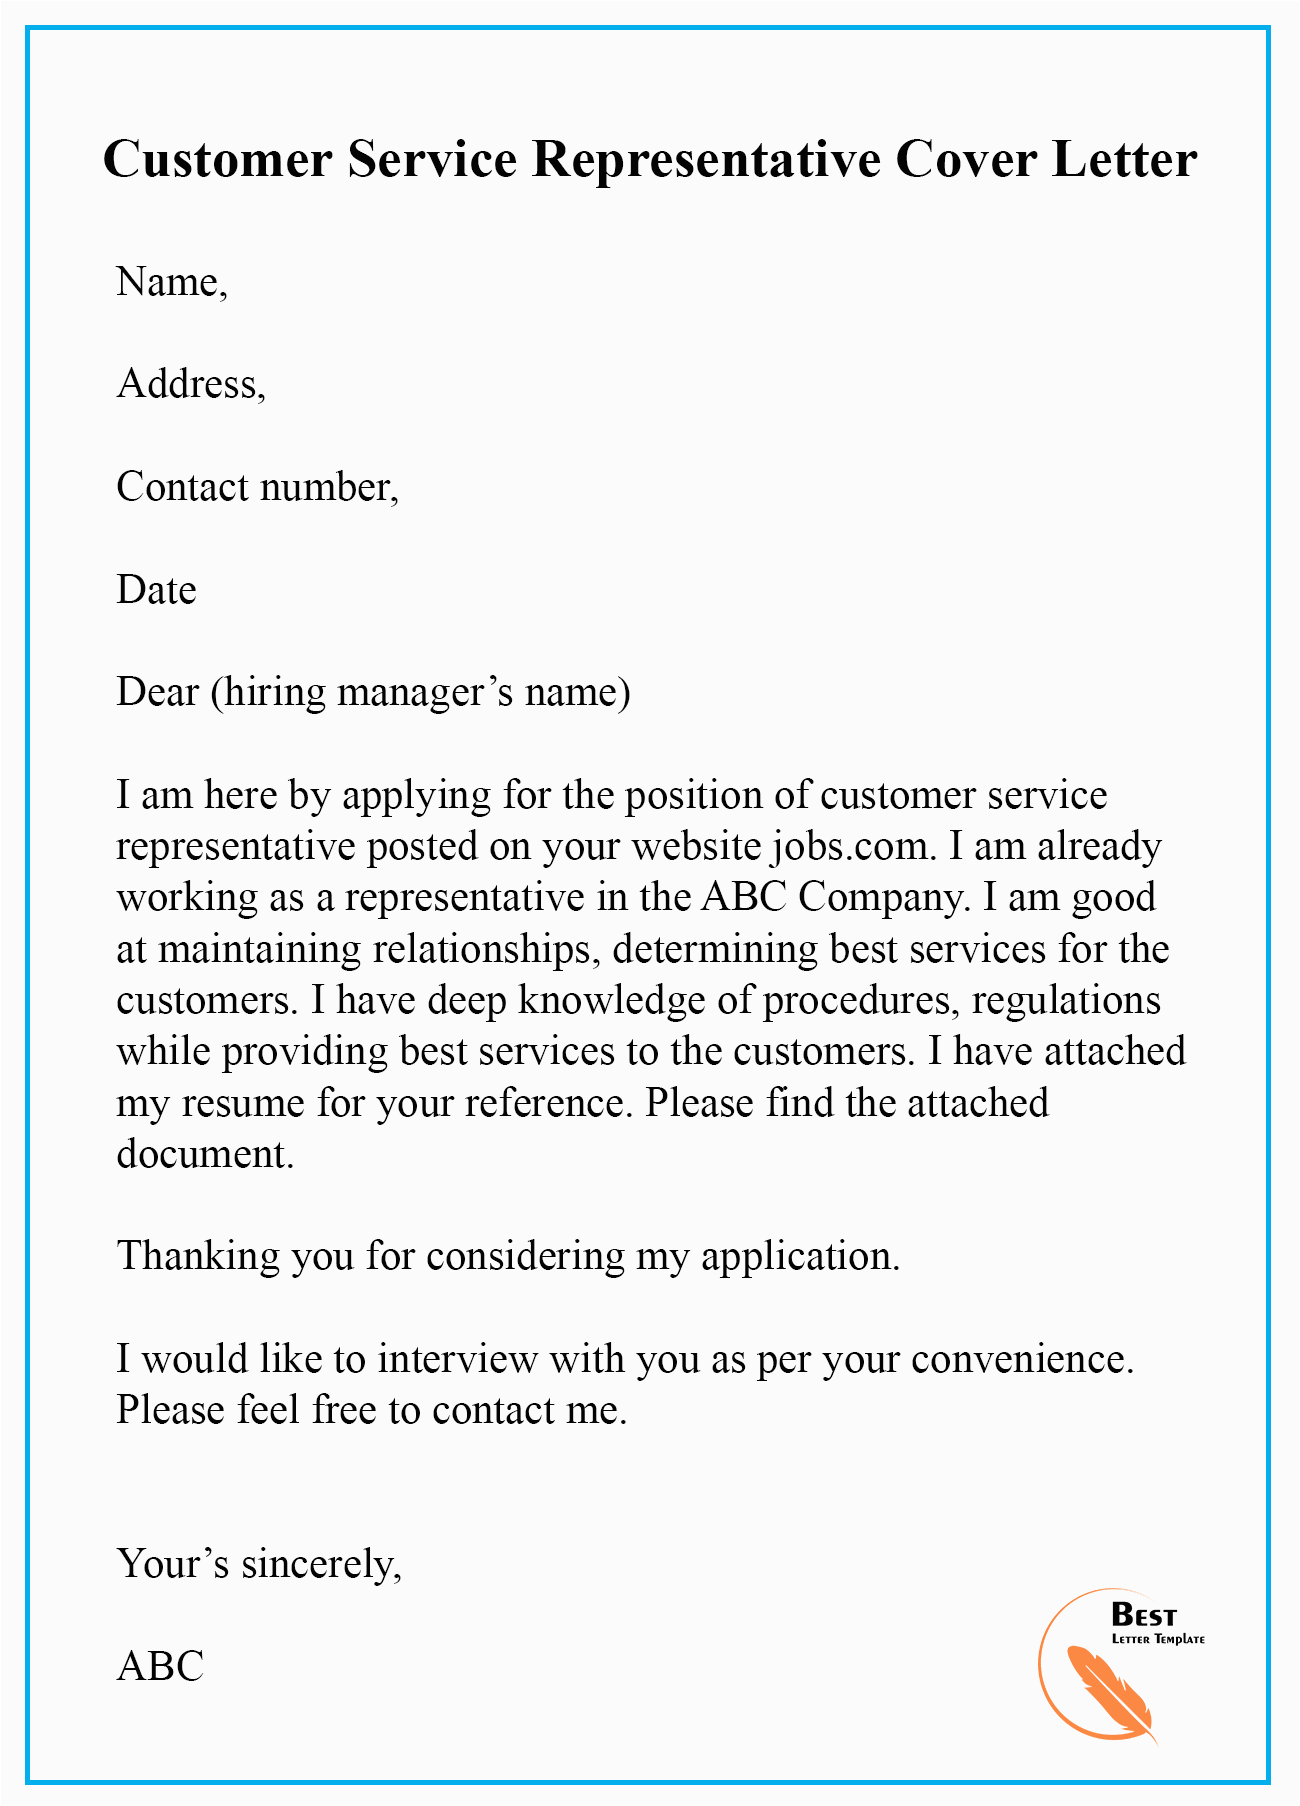 Resume Cover Letter Sample for Customer Service Representative Customer Service Representative Cover Letter Sample for